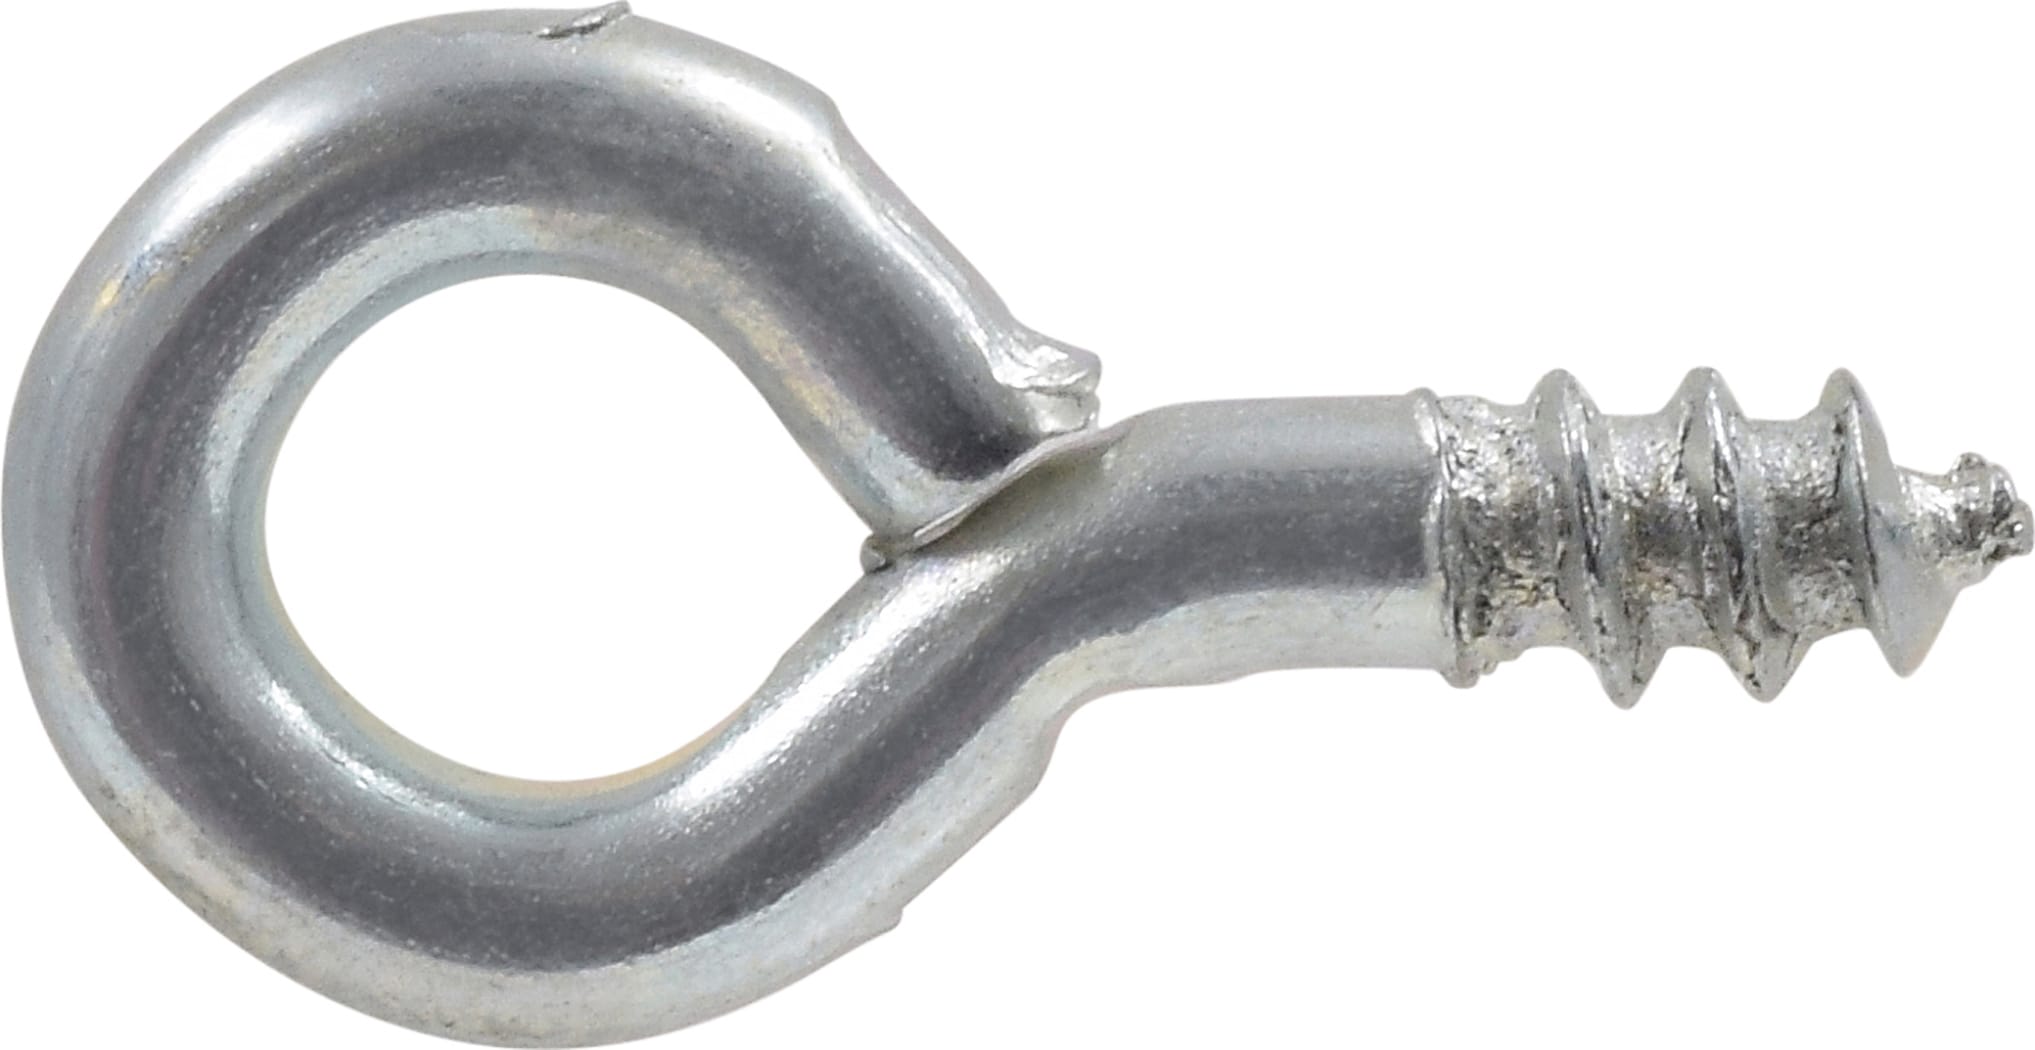 Hillman 0.8125-in Zinc-Plated Steel Screw Eye Hook | 35229